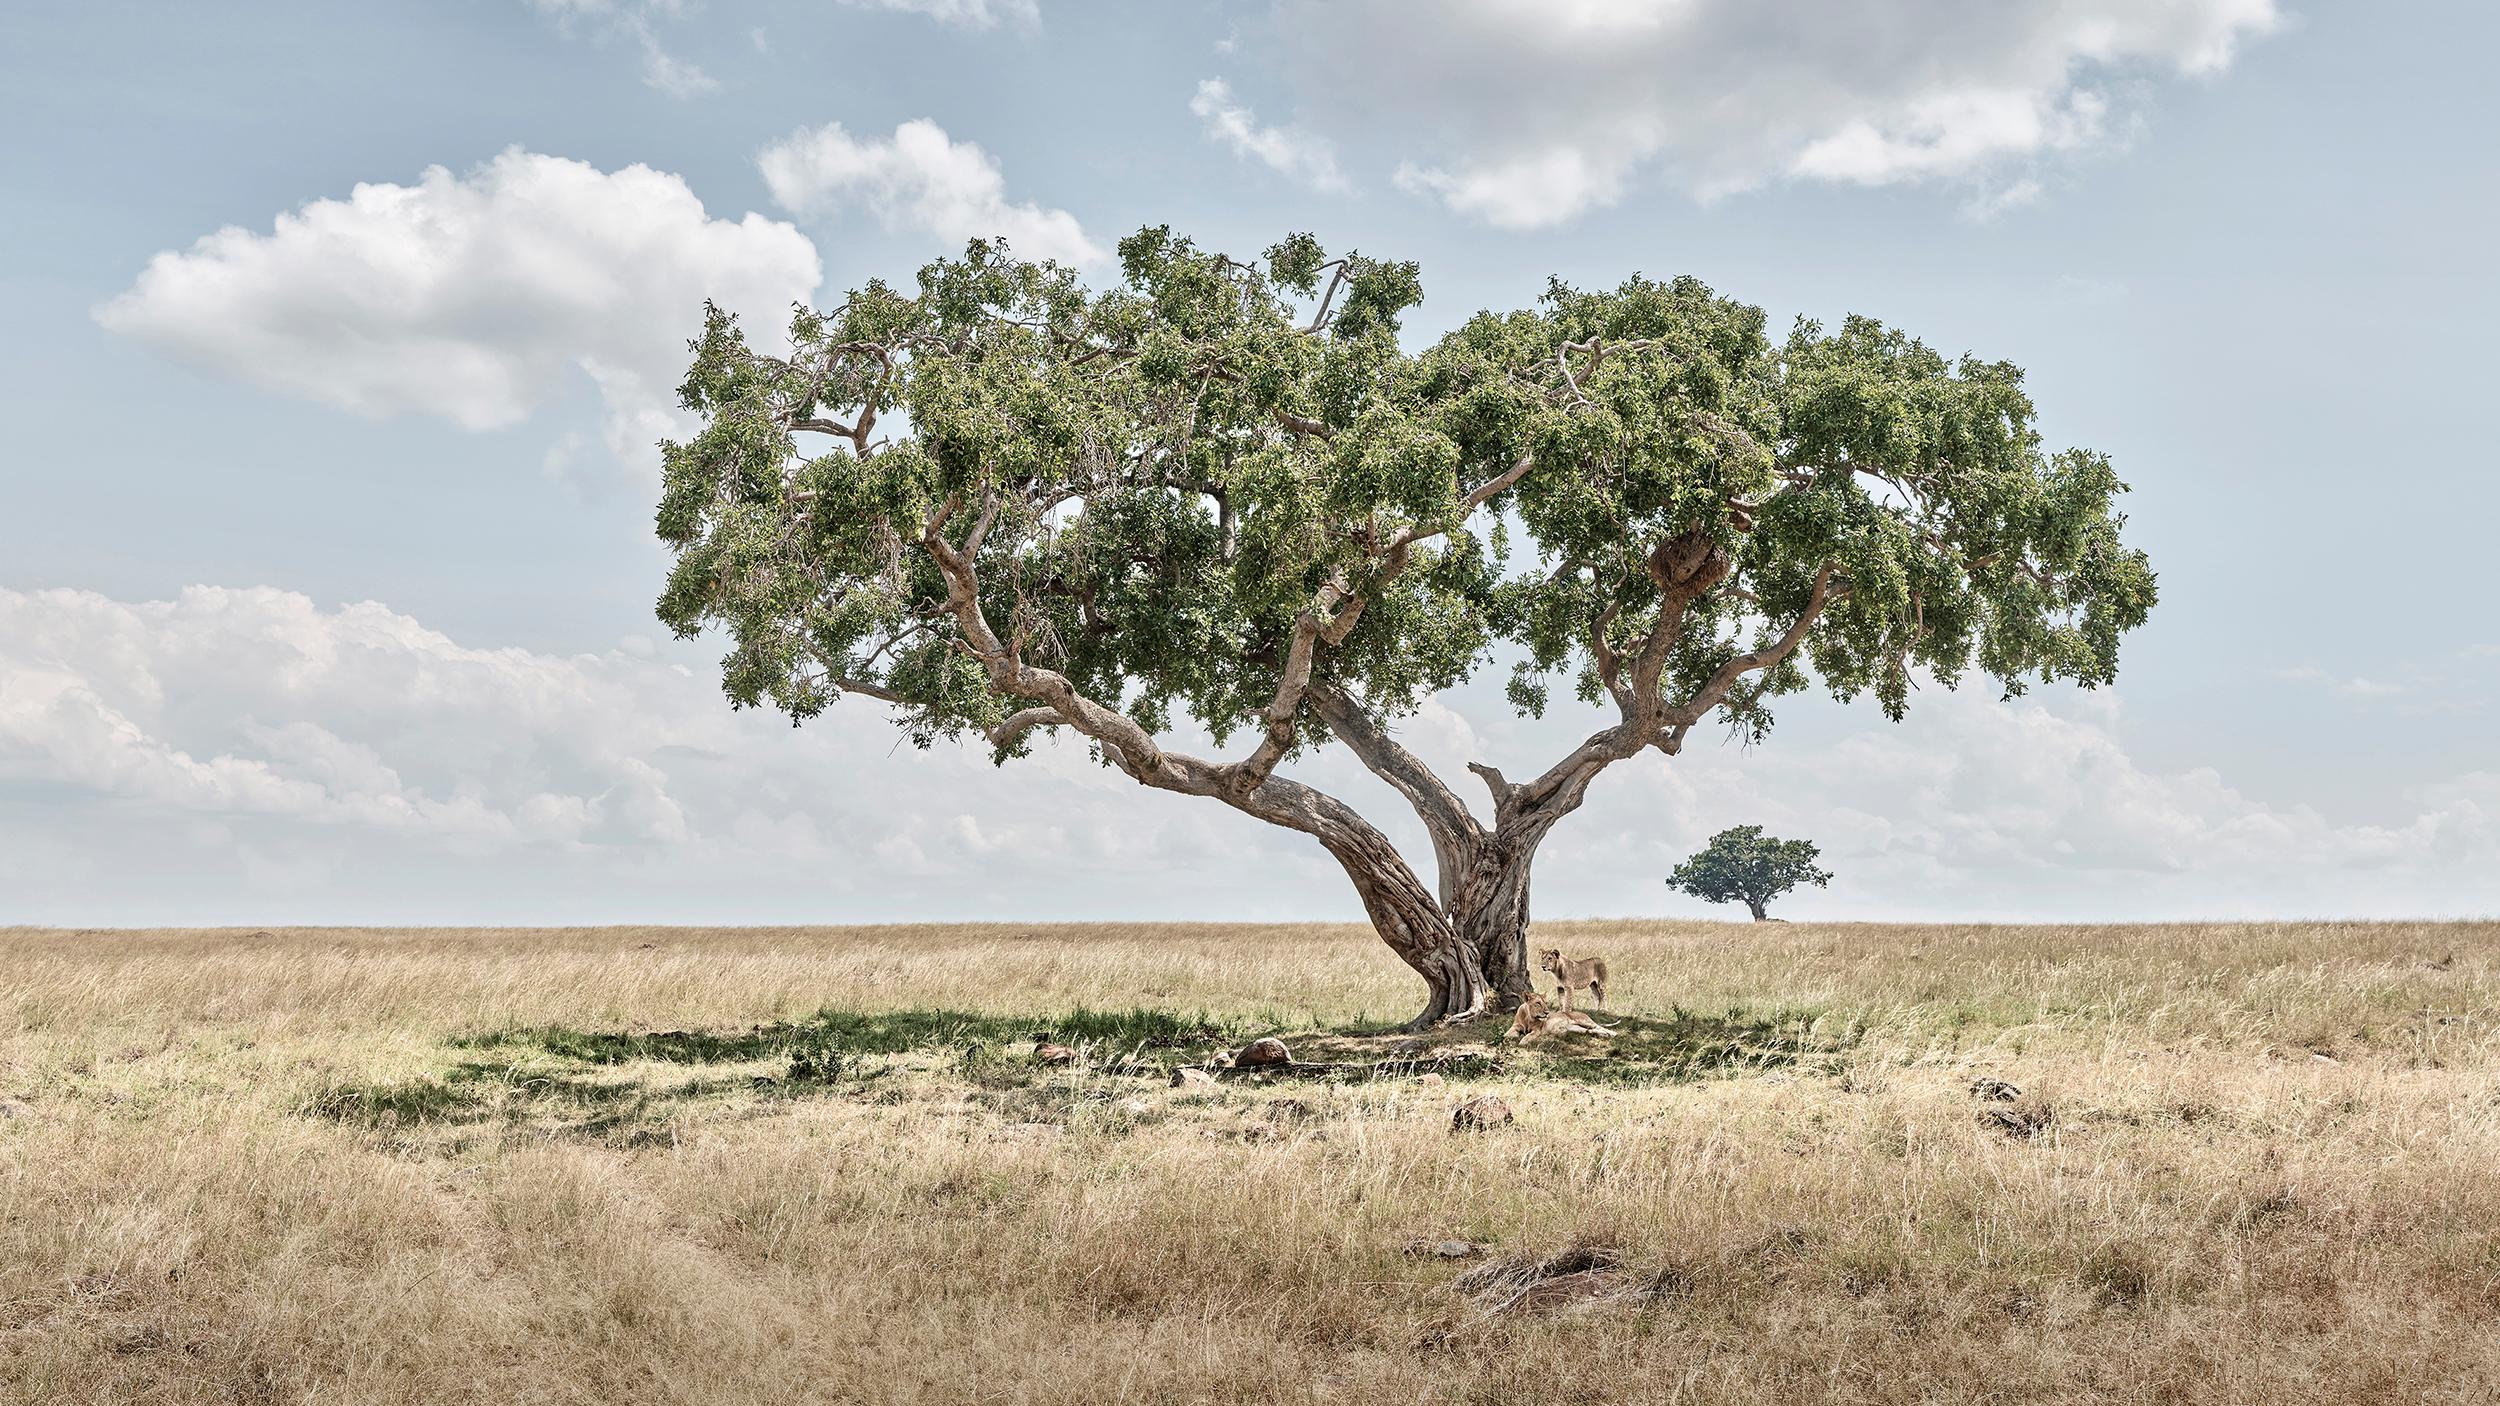 David Burdeny - Lion Cubs Under Acacia Tree, Maasai Mara, 2018, Printed After